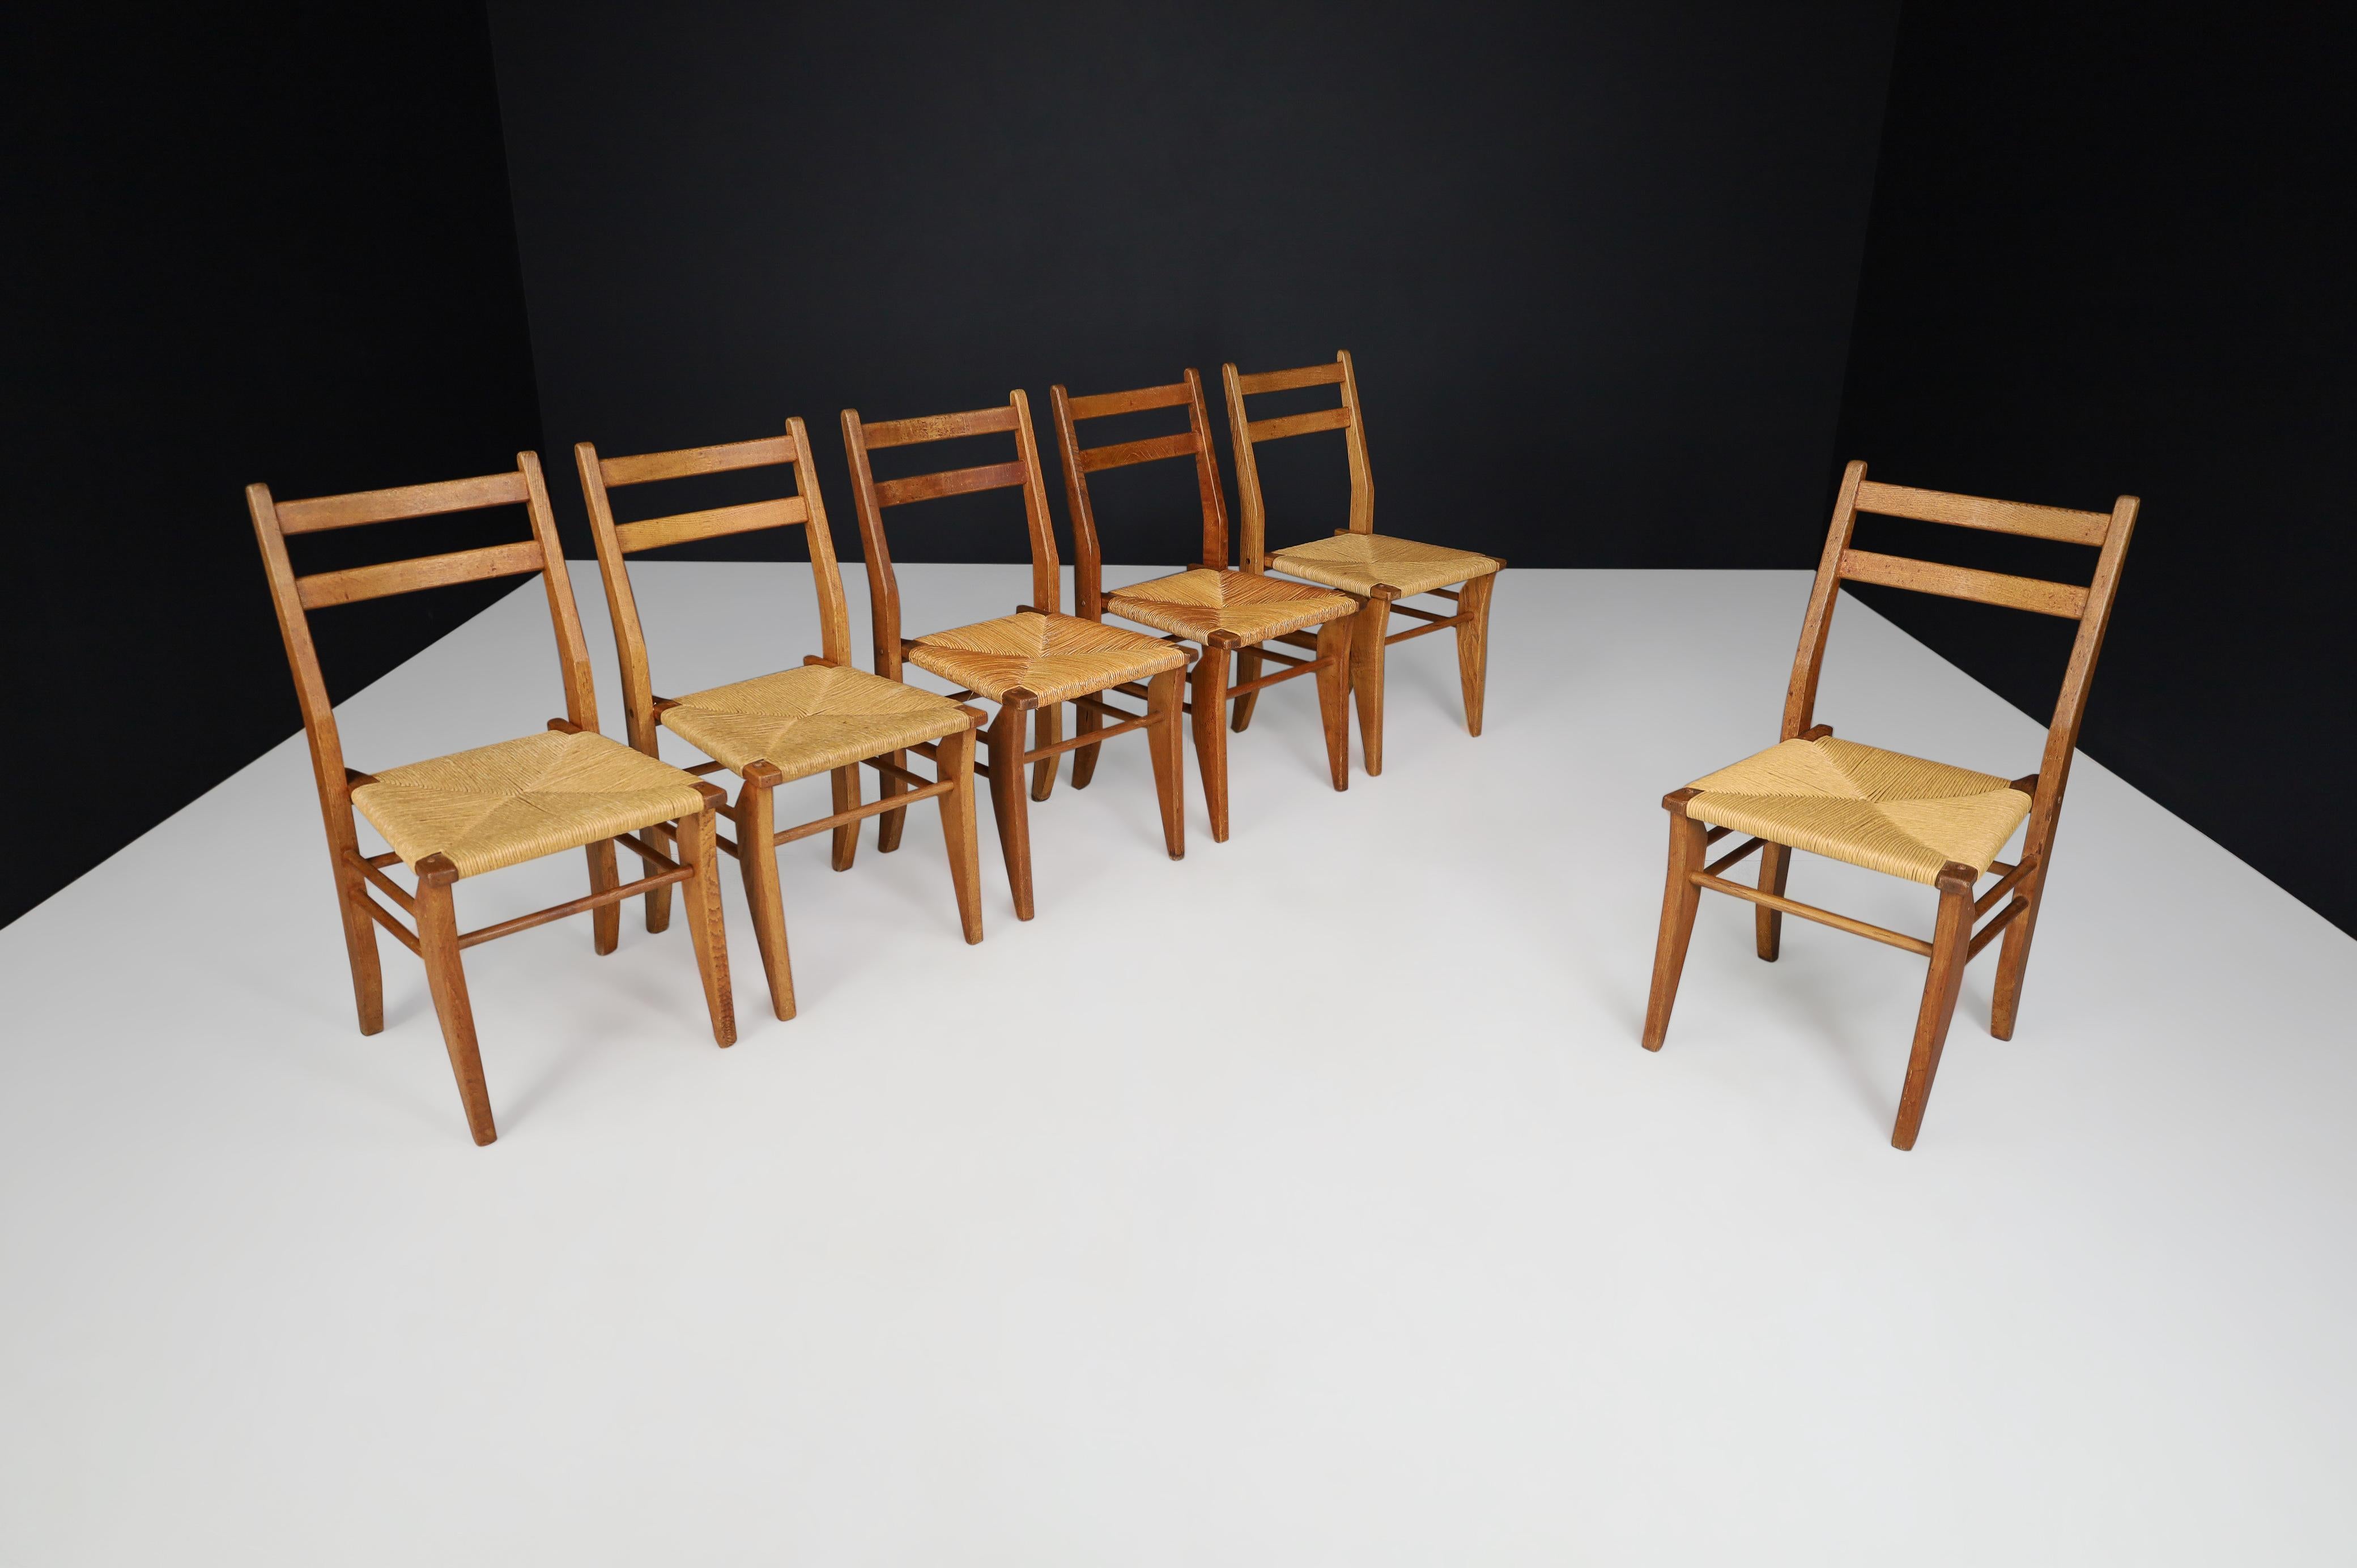 Guillerme & Chambron, ensemble de six chaises de salle à manger en chêne et jonc, France, années 1960  

Ensemble de six chaises de salle à manger en chêne massif et jonc par Guillerme et Chambron. Ces chaises présentent un bon dossier combiné aux